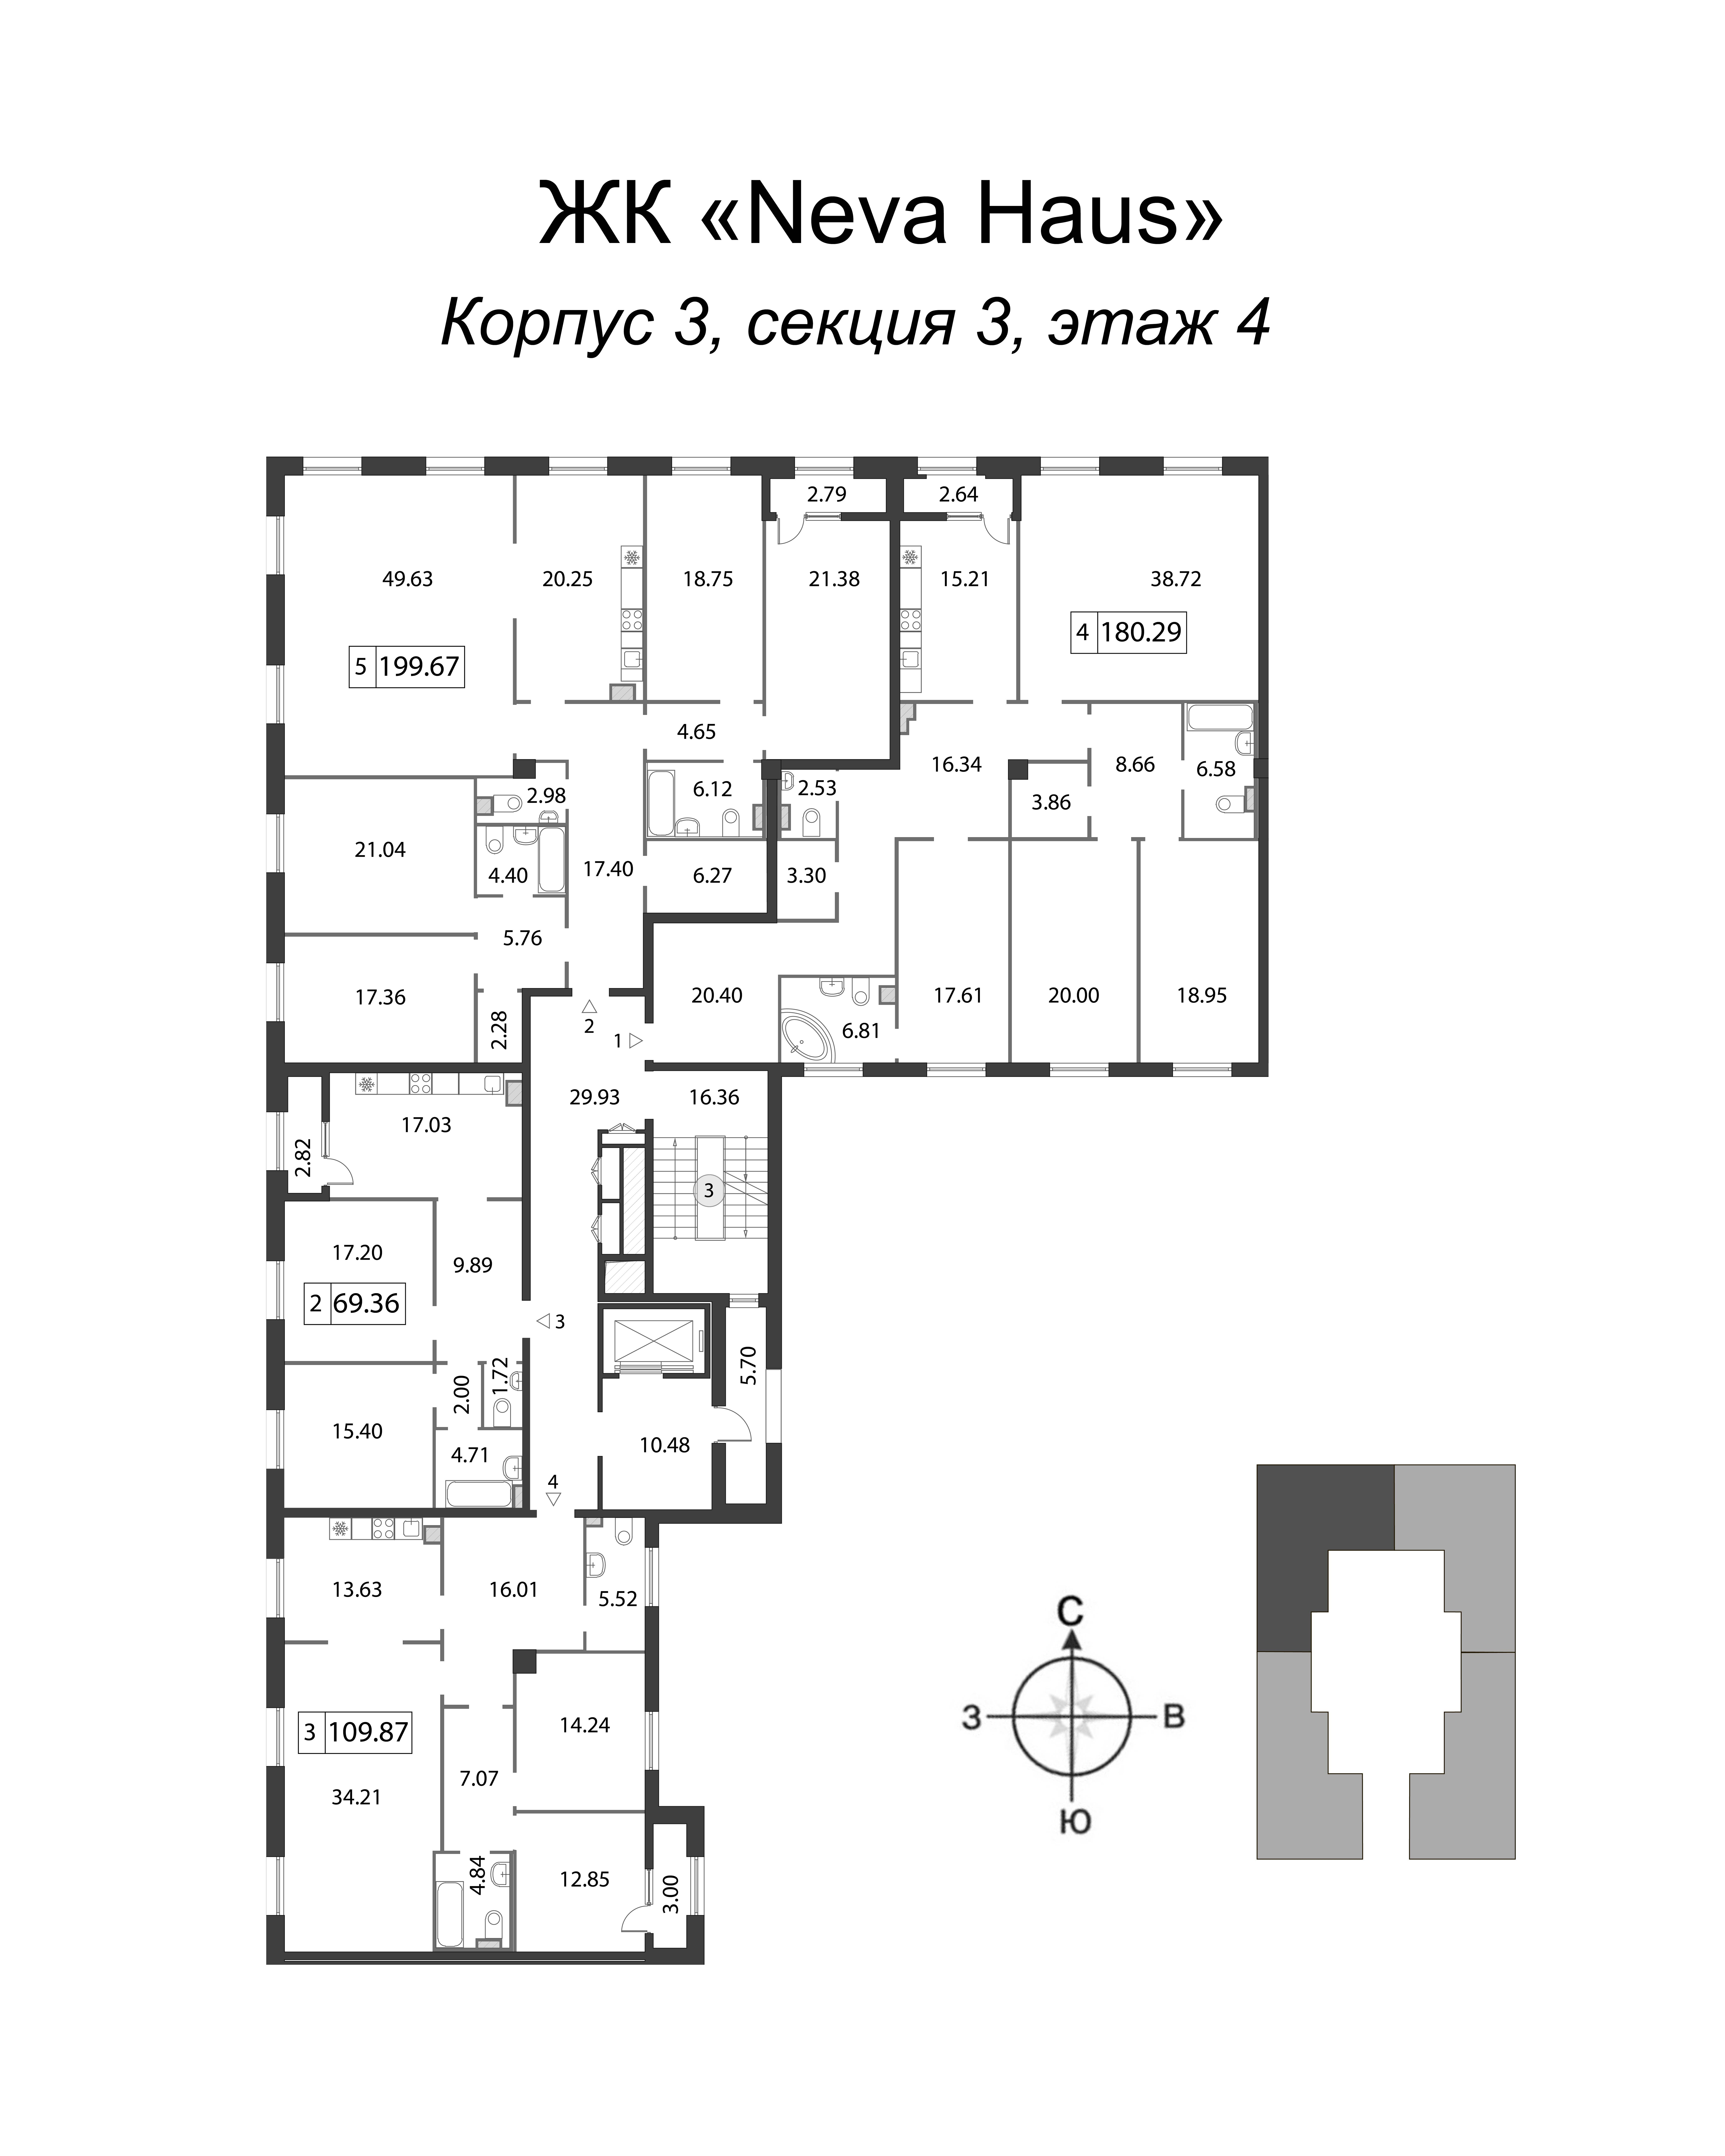 5-комнатная (Евро) квартира, 180.7 м² в ЖК "Neva Haus" - планировка этажа